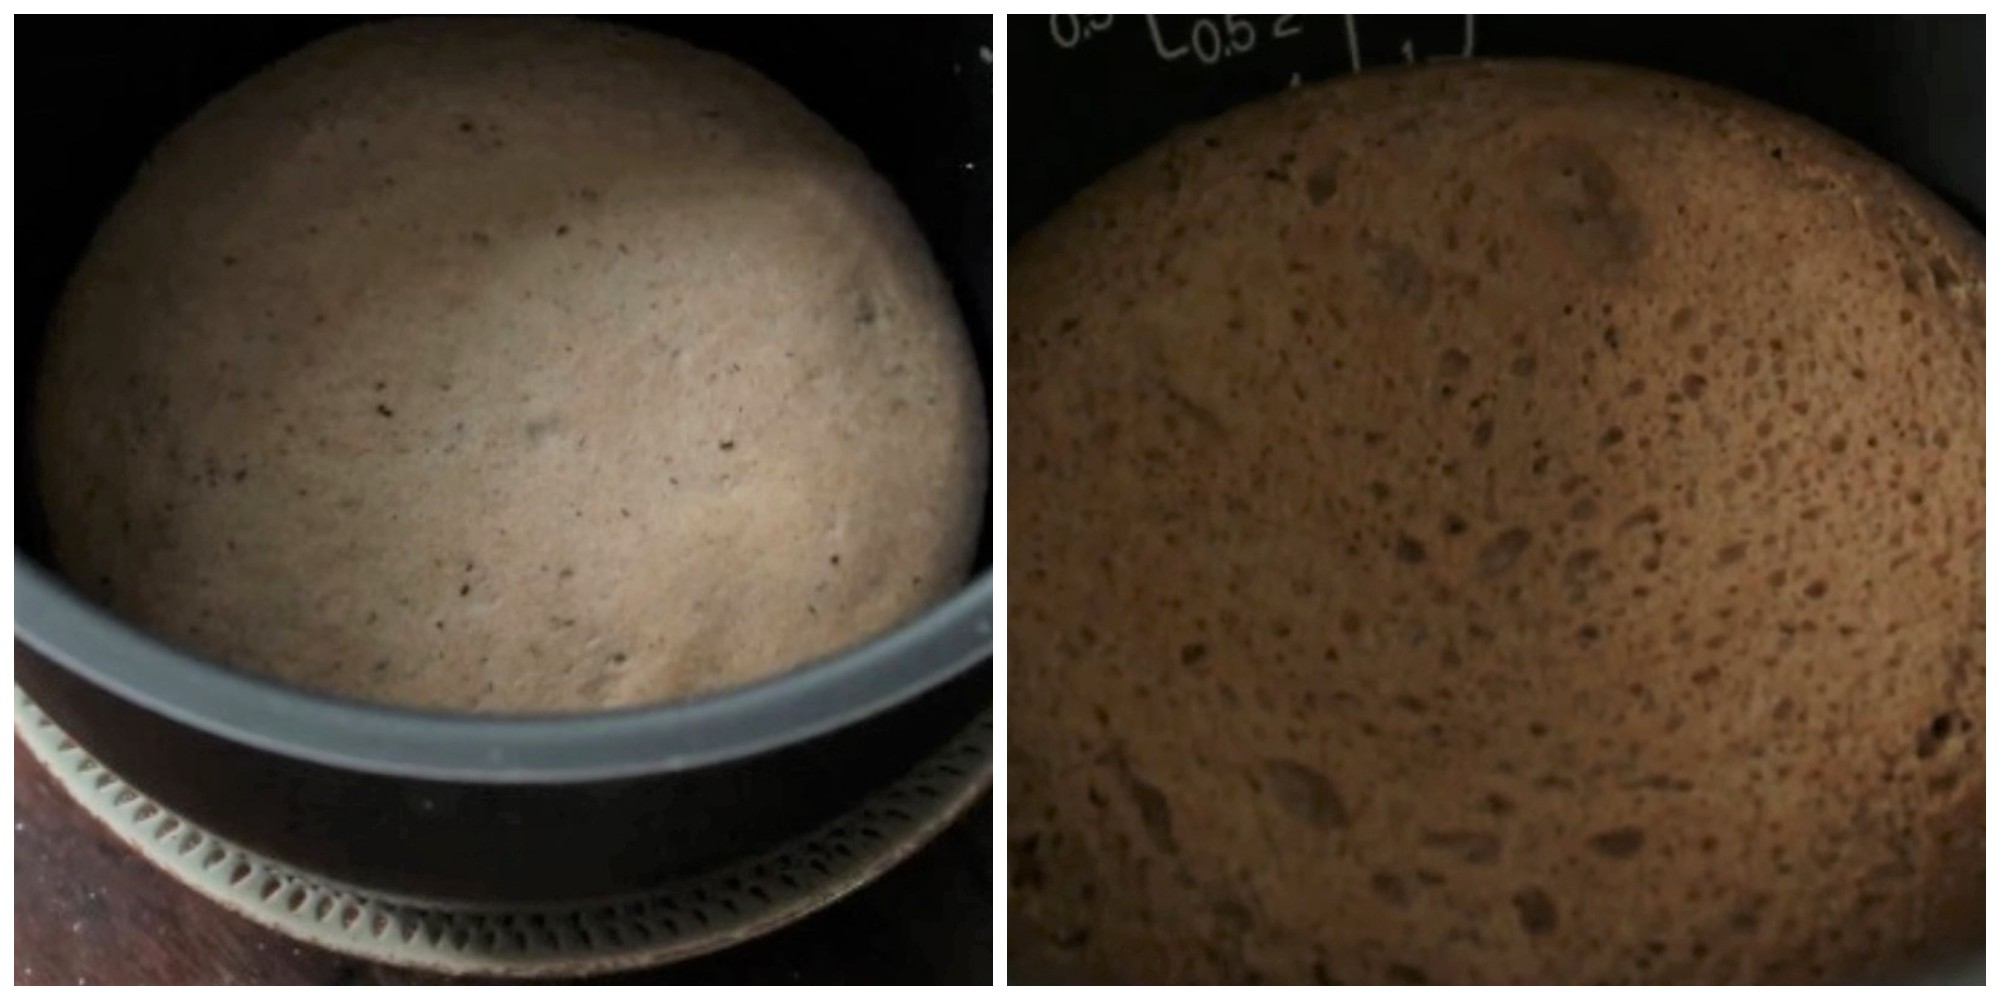 Khi bánh đã nở gần gấp đôi so với lần ủ trước, thì bạn cho vào nồi cơm điện